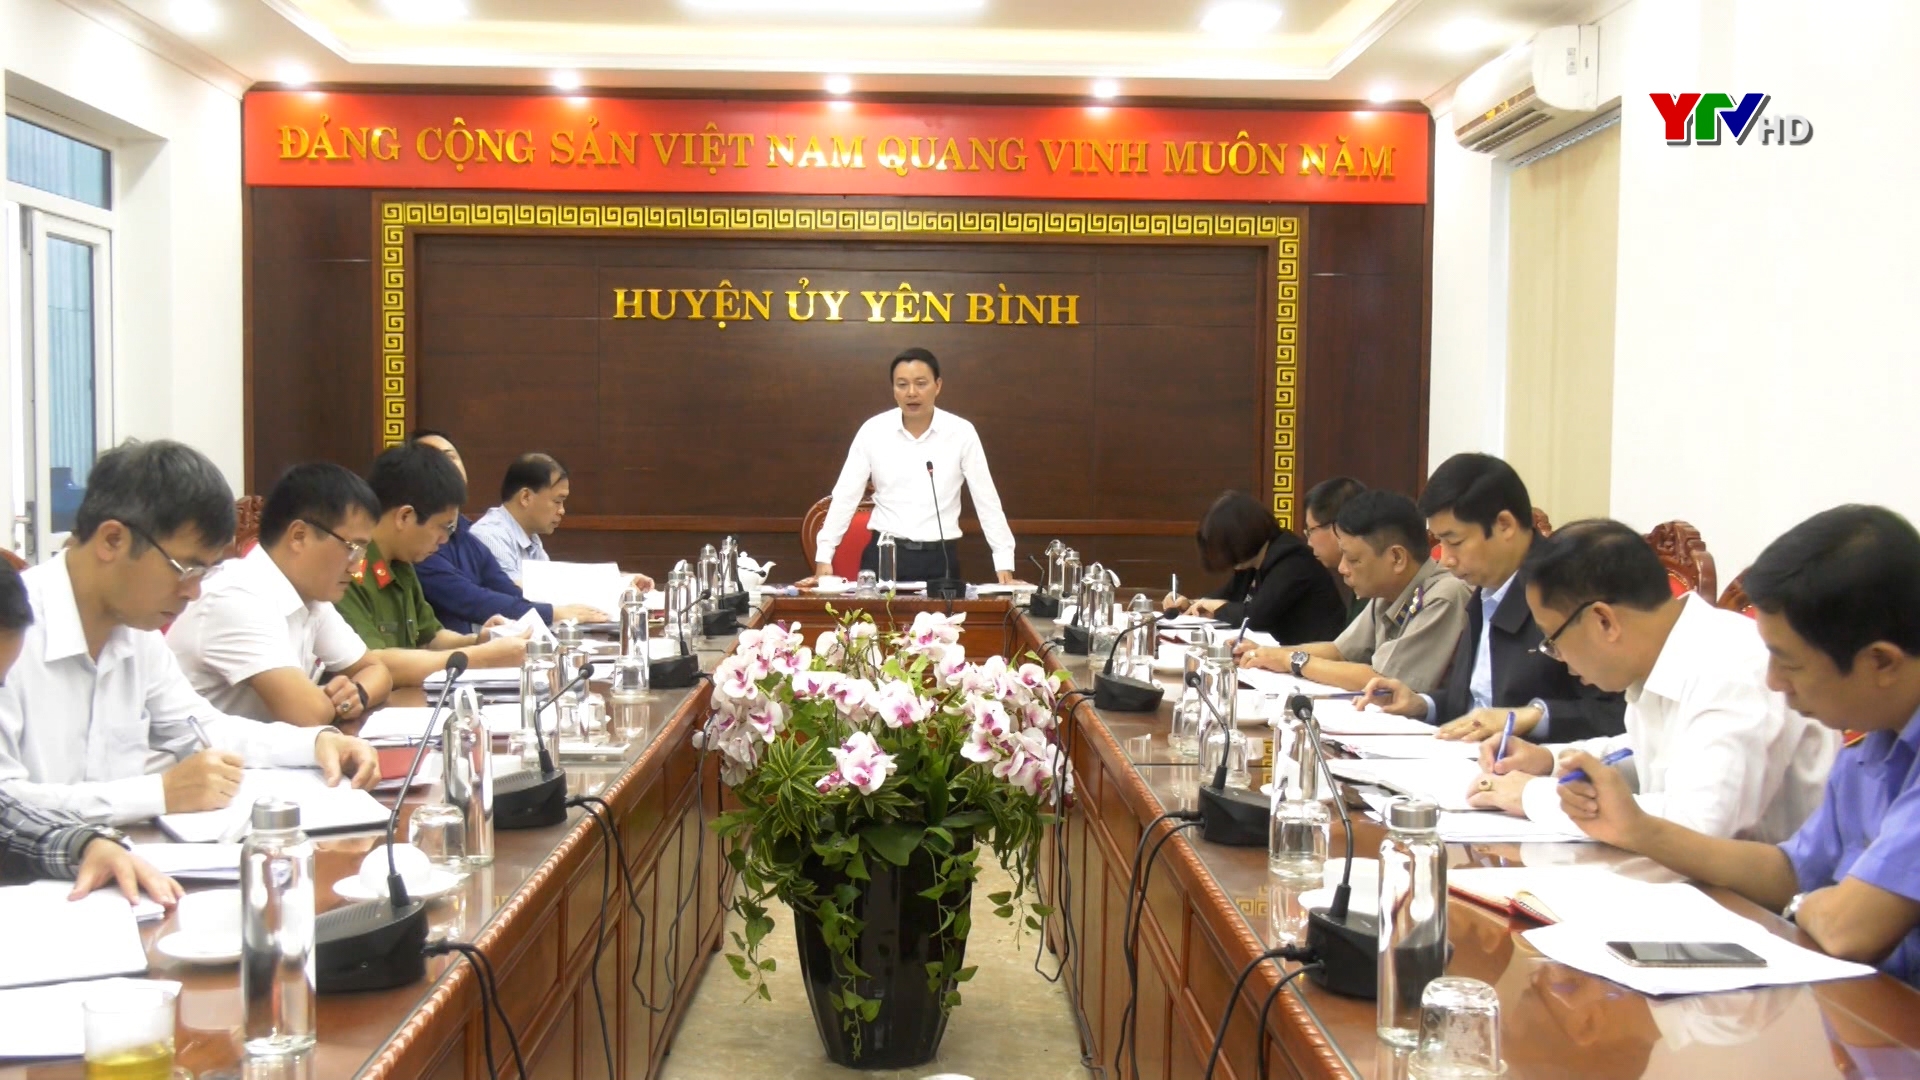 Huyện ủy Yên Bình sơ kết công tác nội chính, phòng chống tham nhũng và cải cách tư pháp